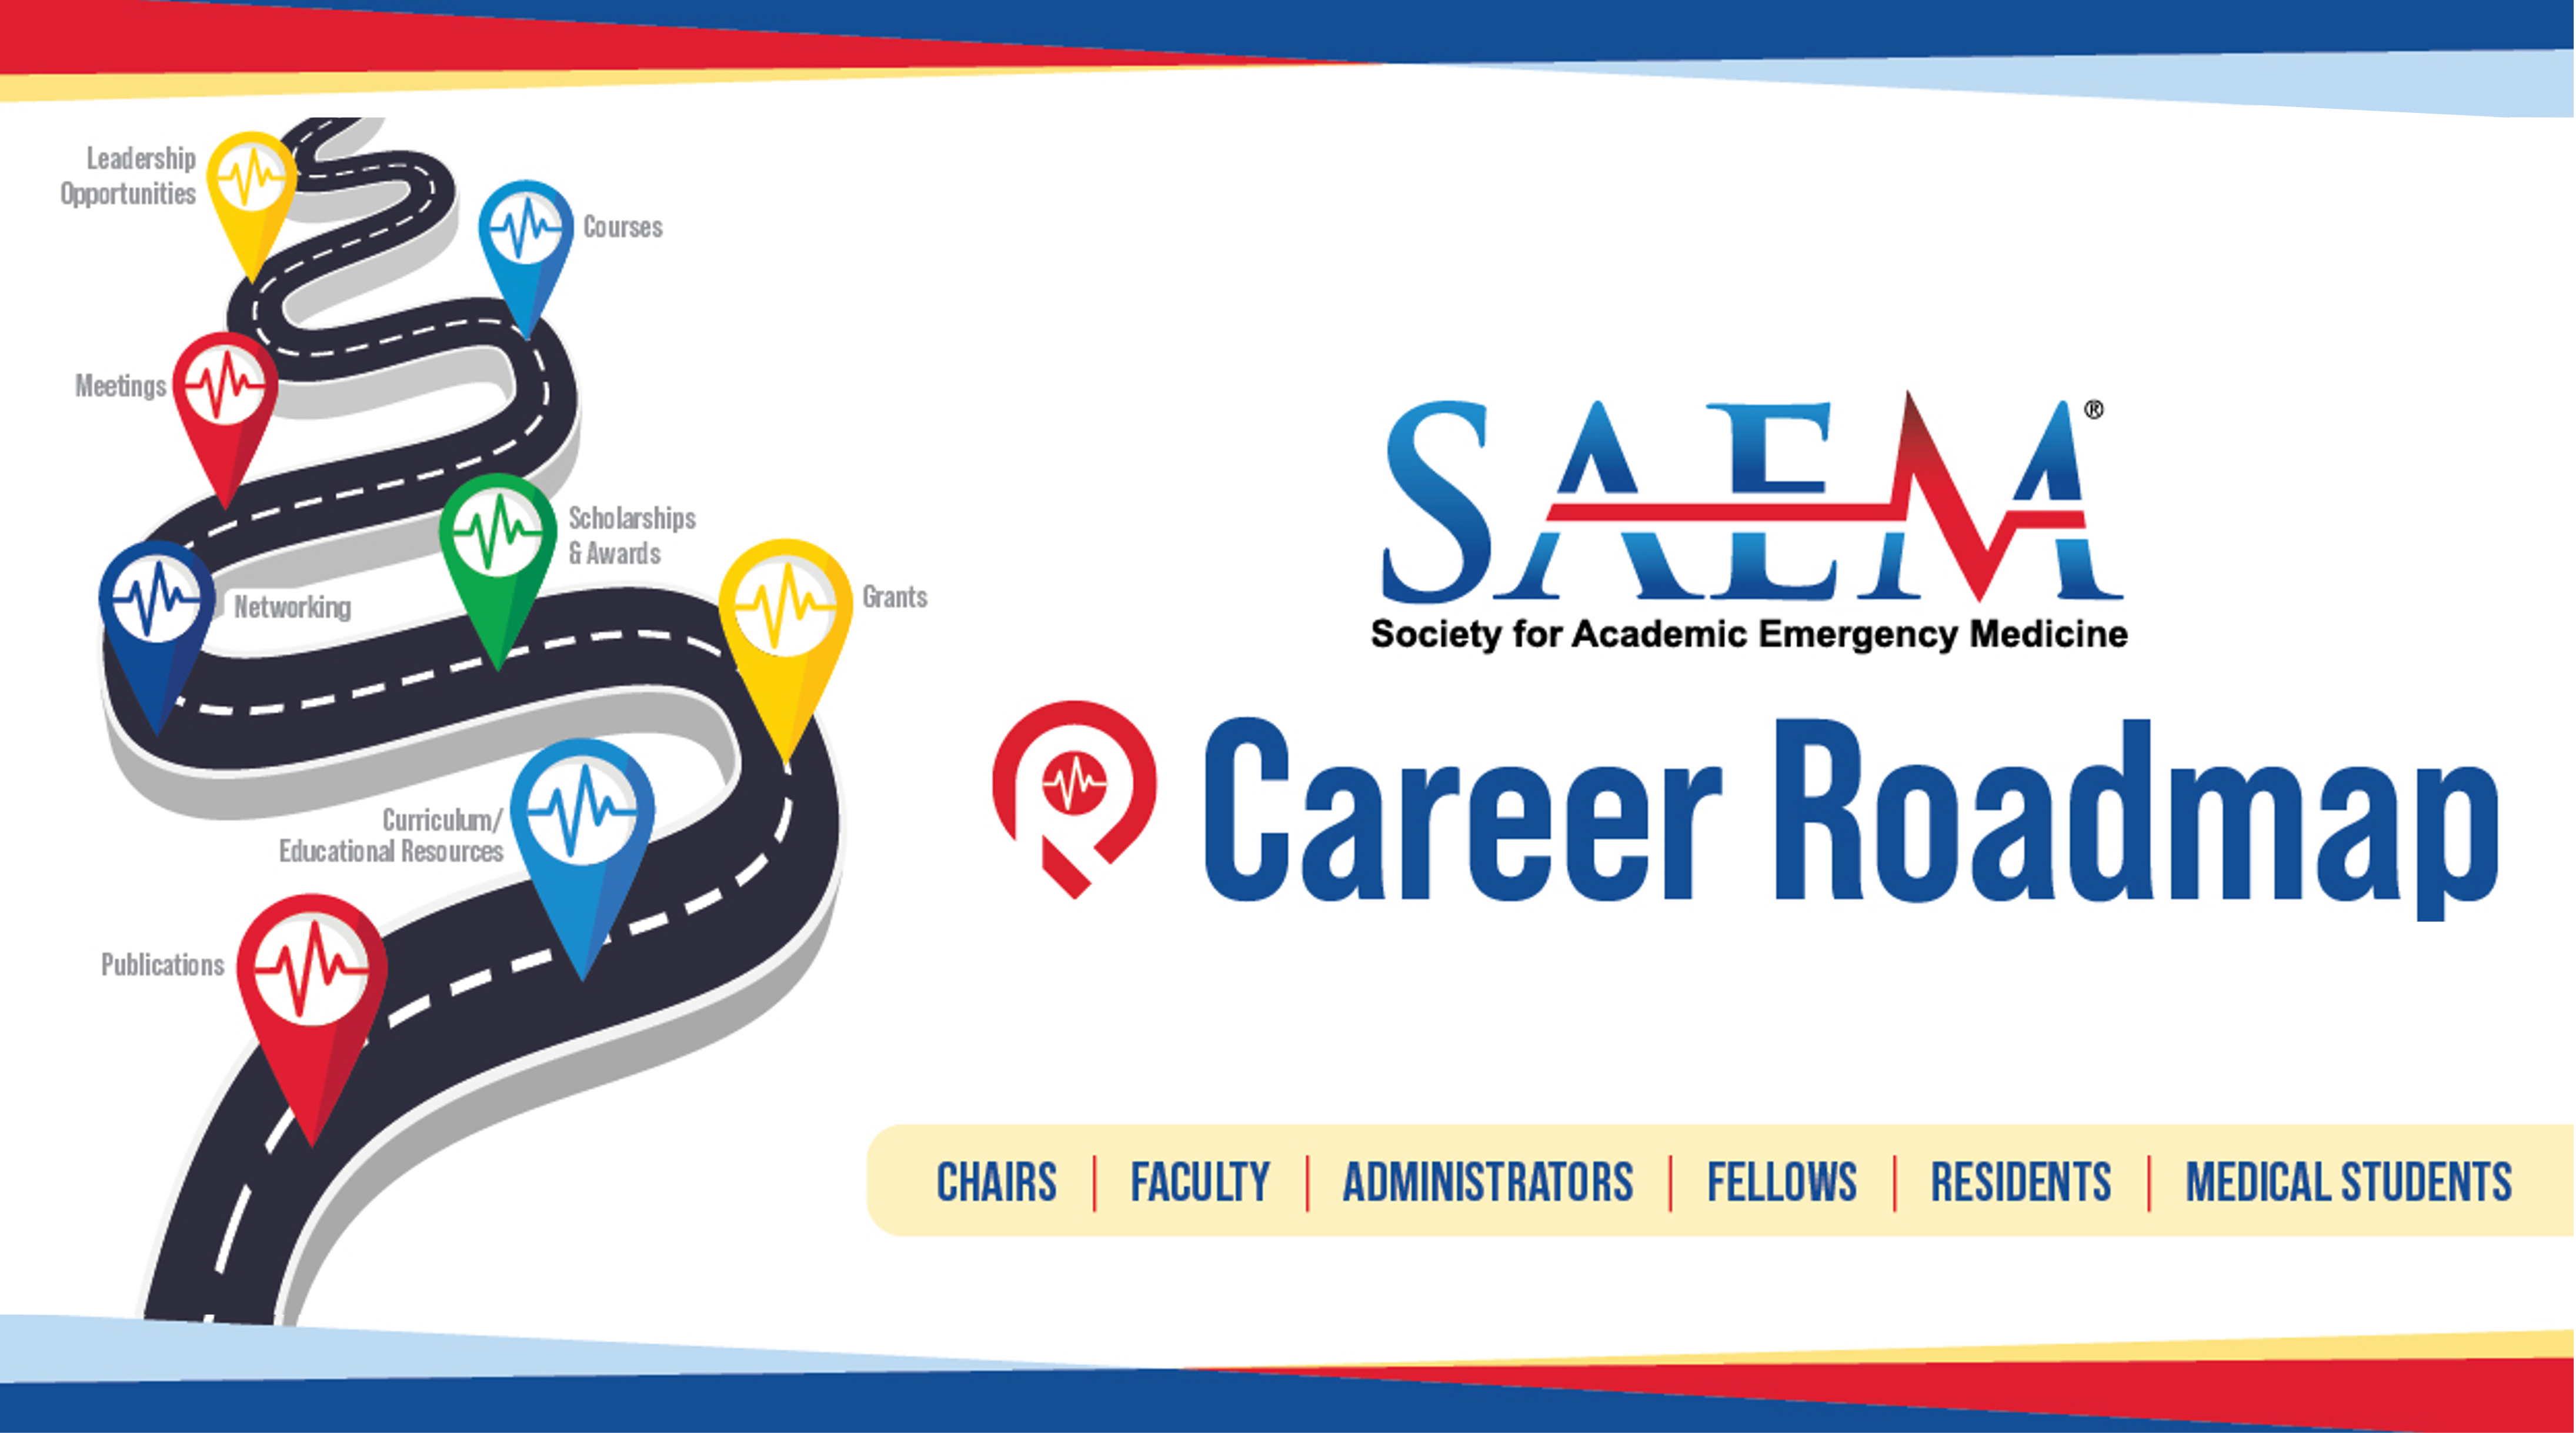 Career Roadmap - Landing Page Image